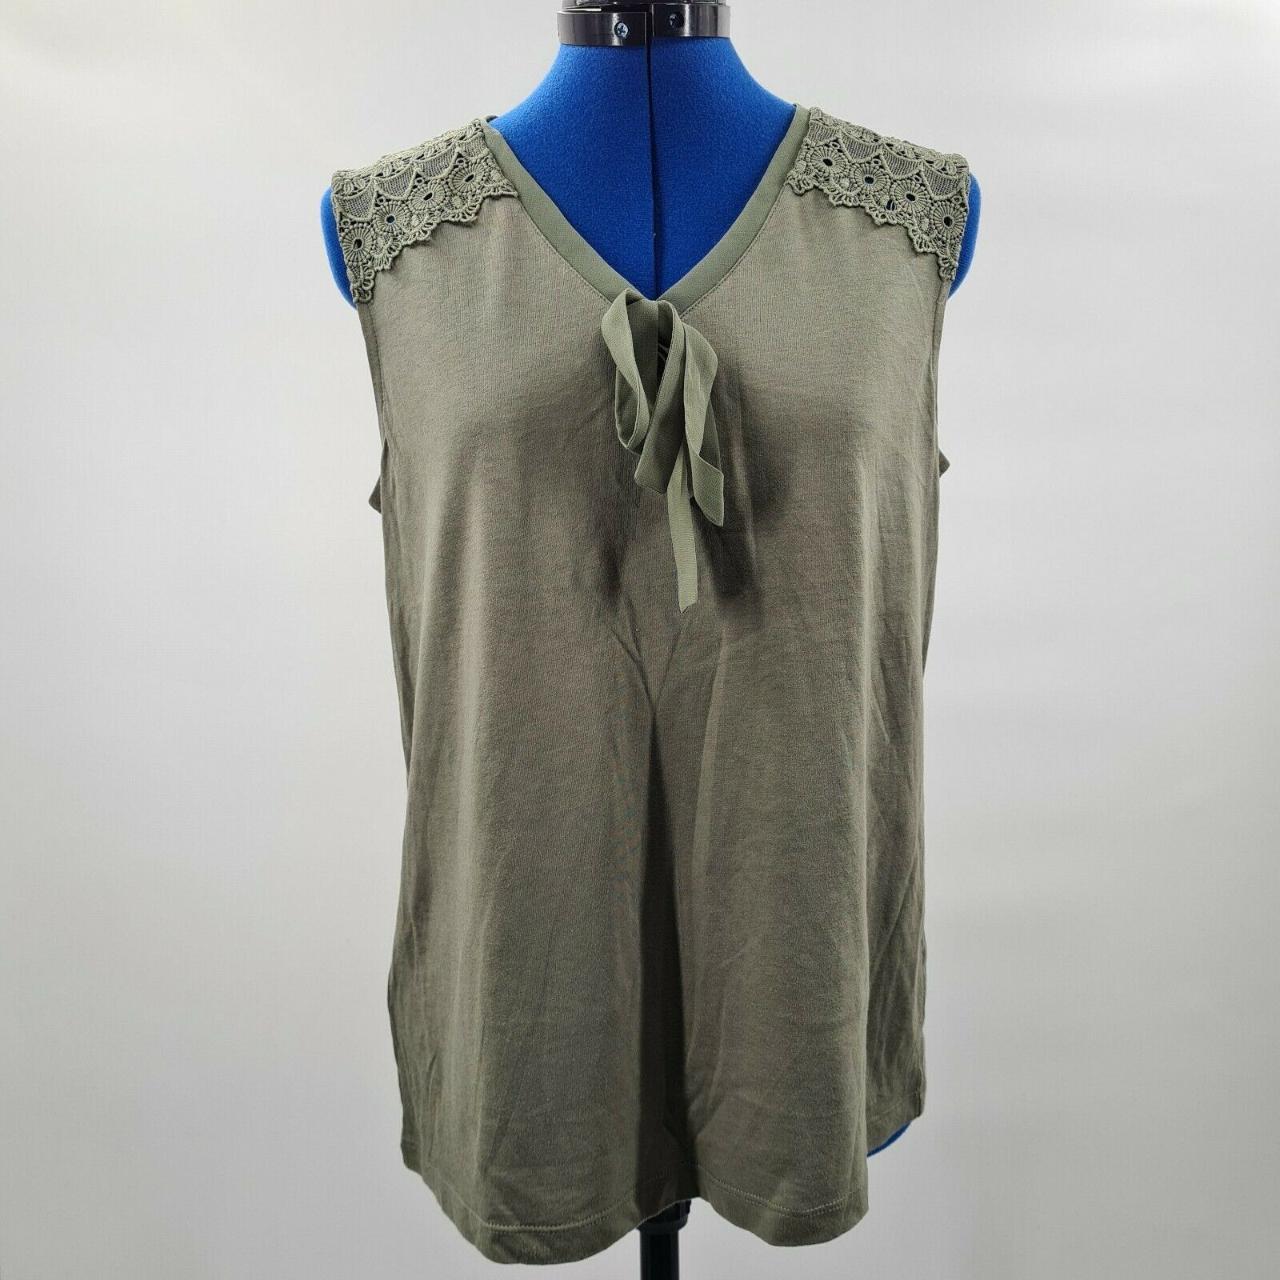 Laura Ashley Womens Lace Vest Size: 12 (EU... - Depop